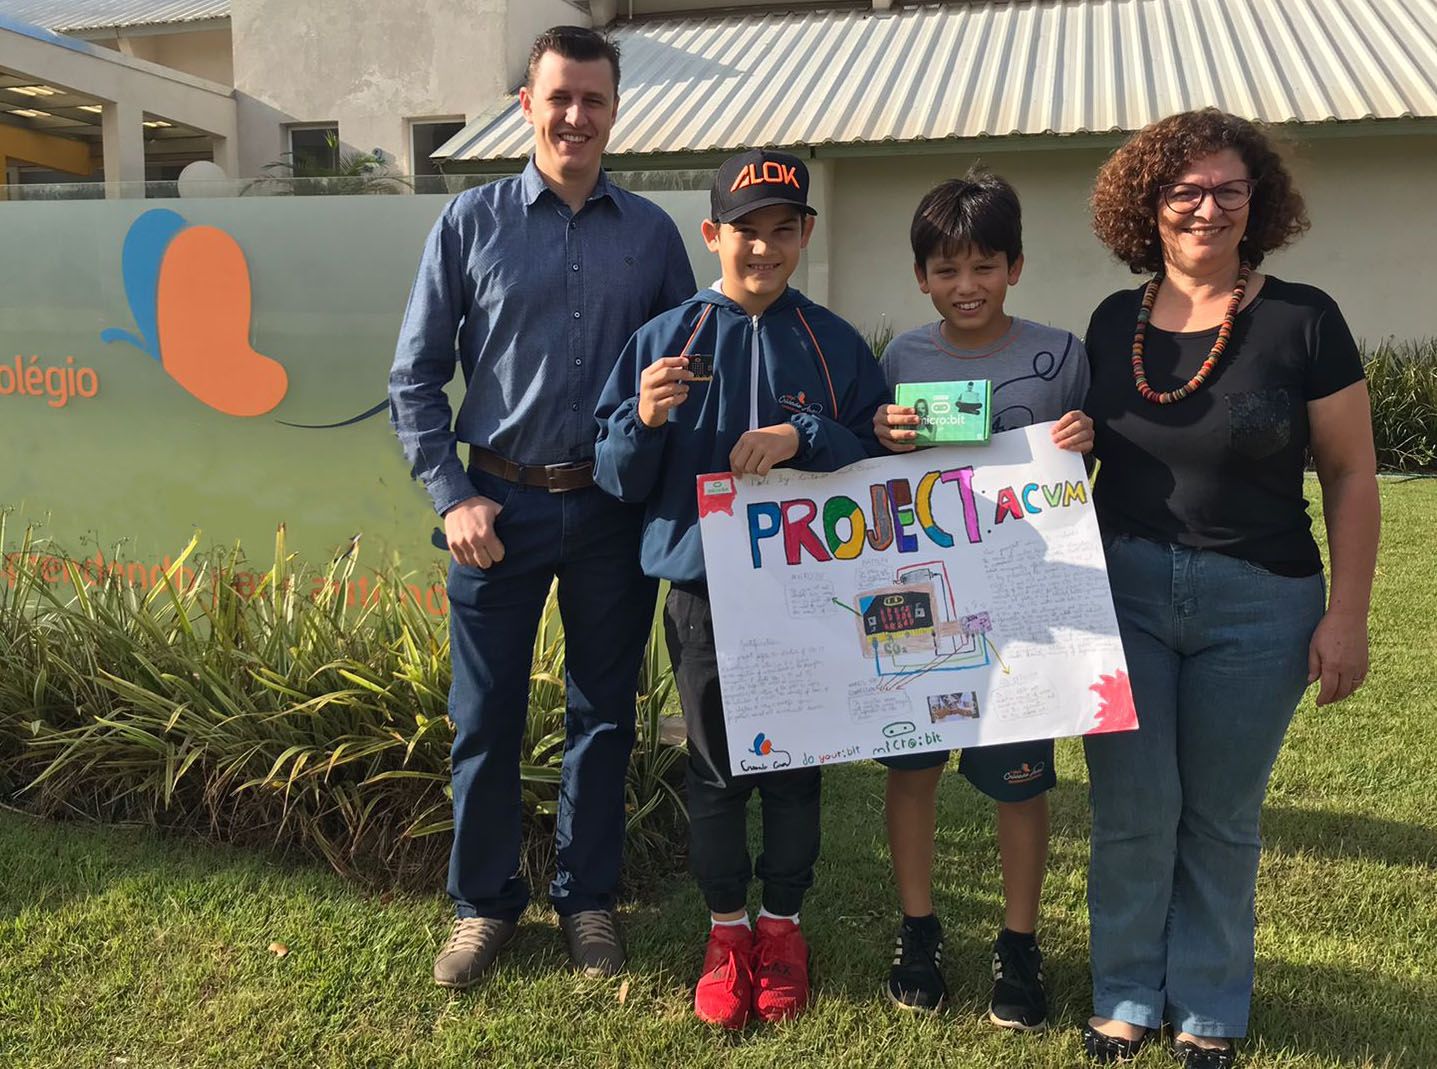 Vinicius i Antonio trzymają razem z nauczycielami swój projekt plakatu przed szkołą